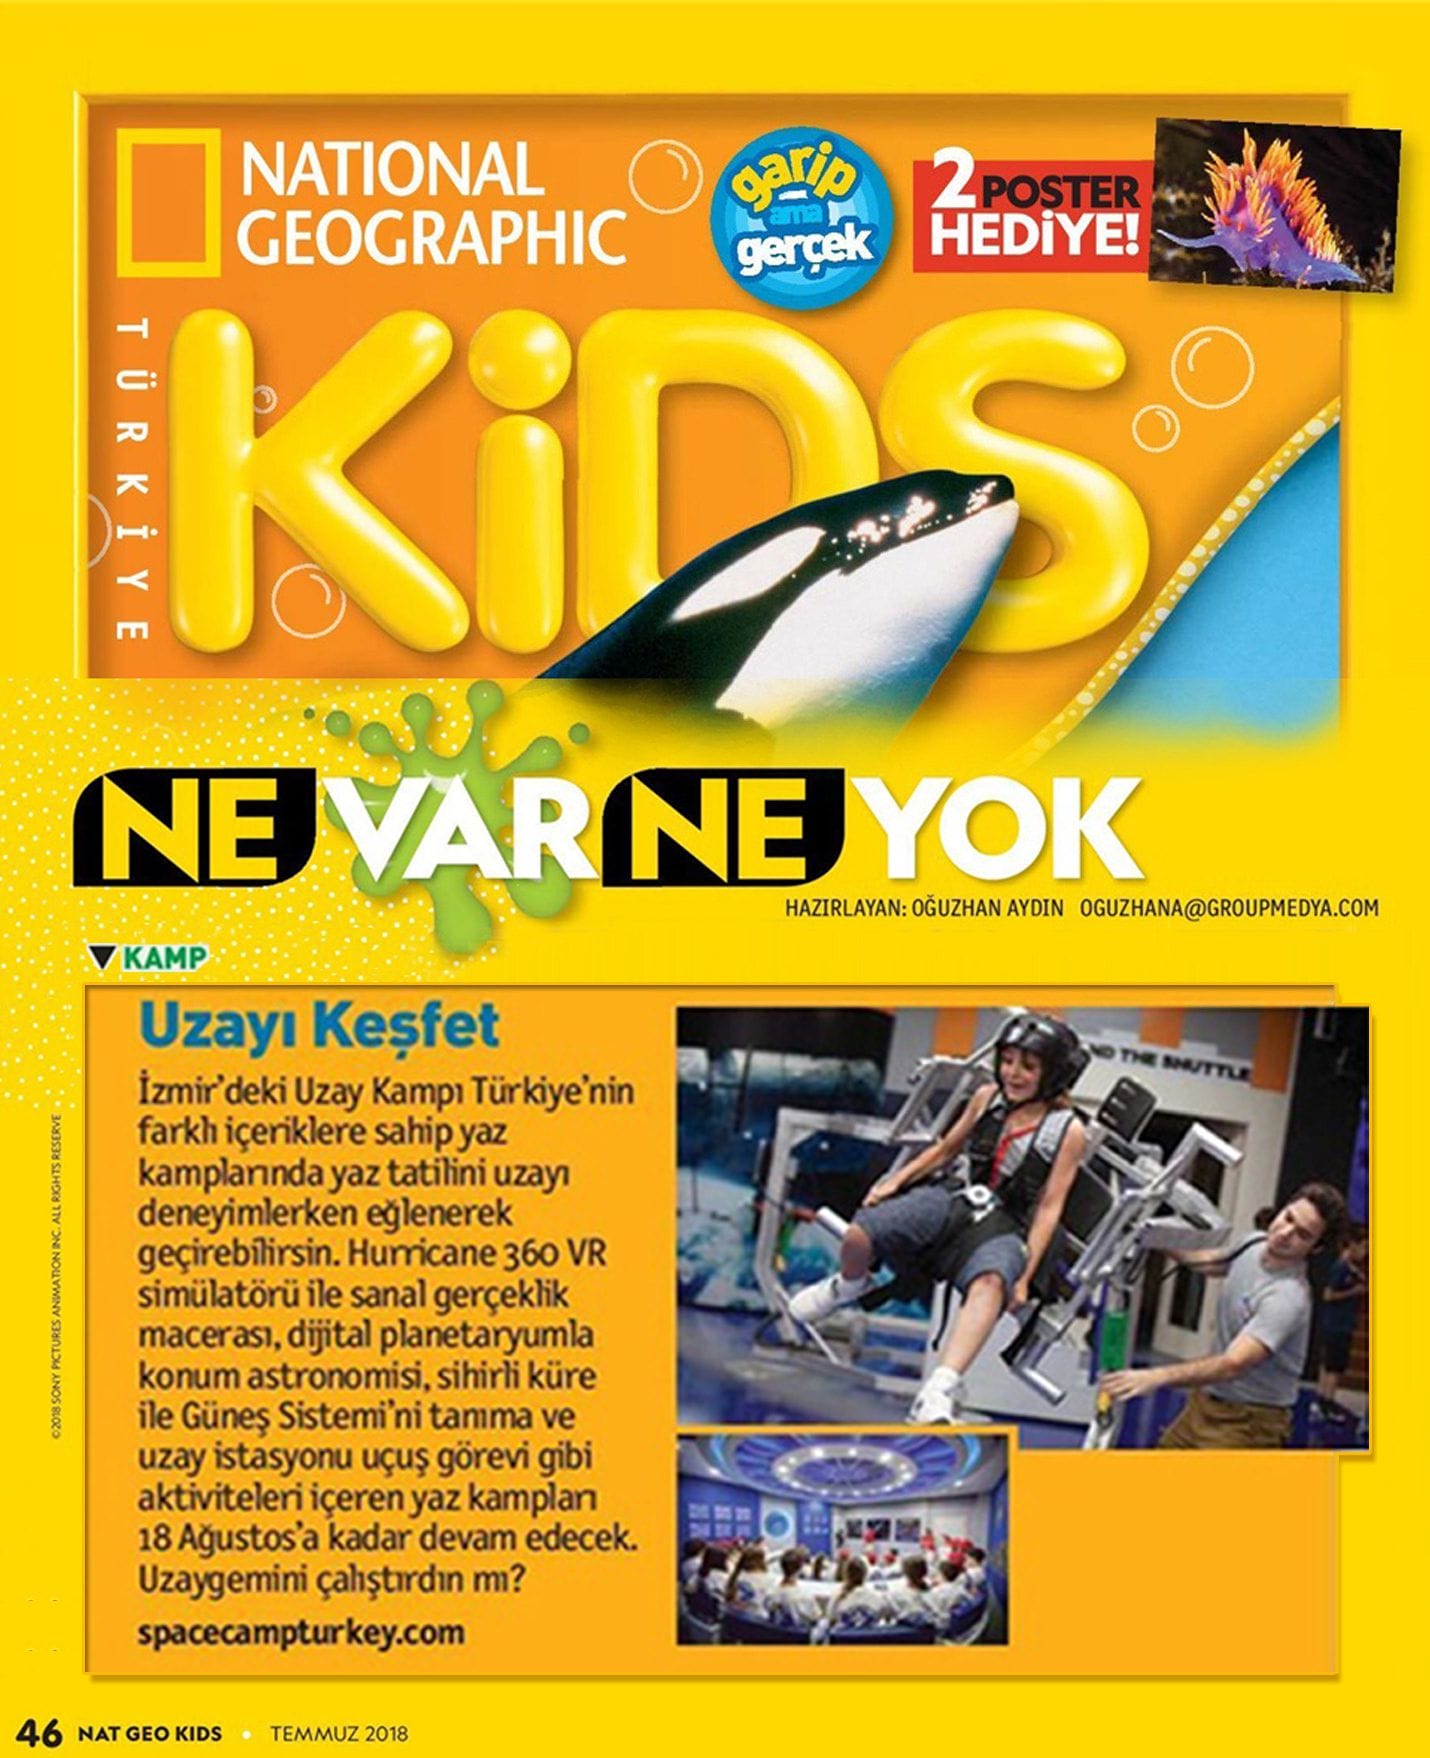 National Geographic Kids && Uzayı Keşfet